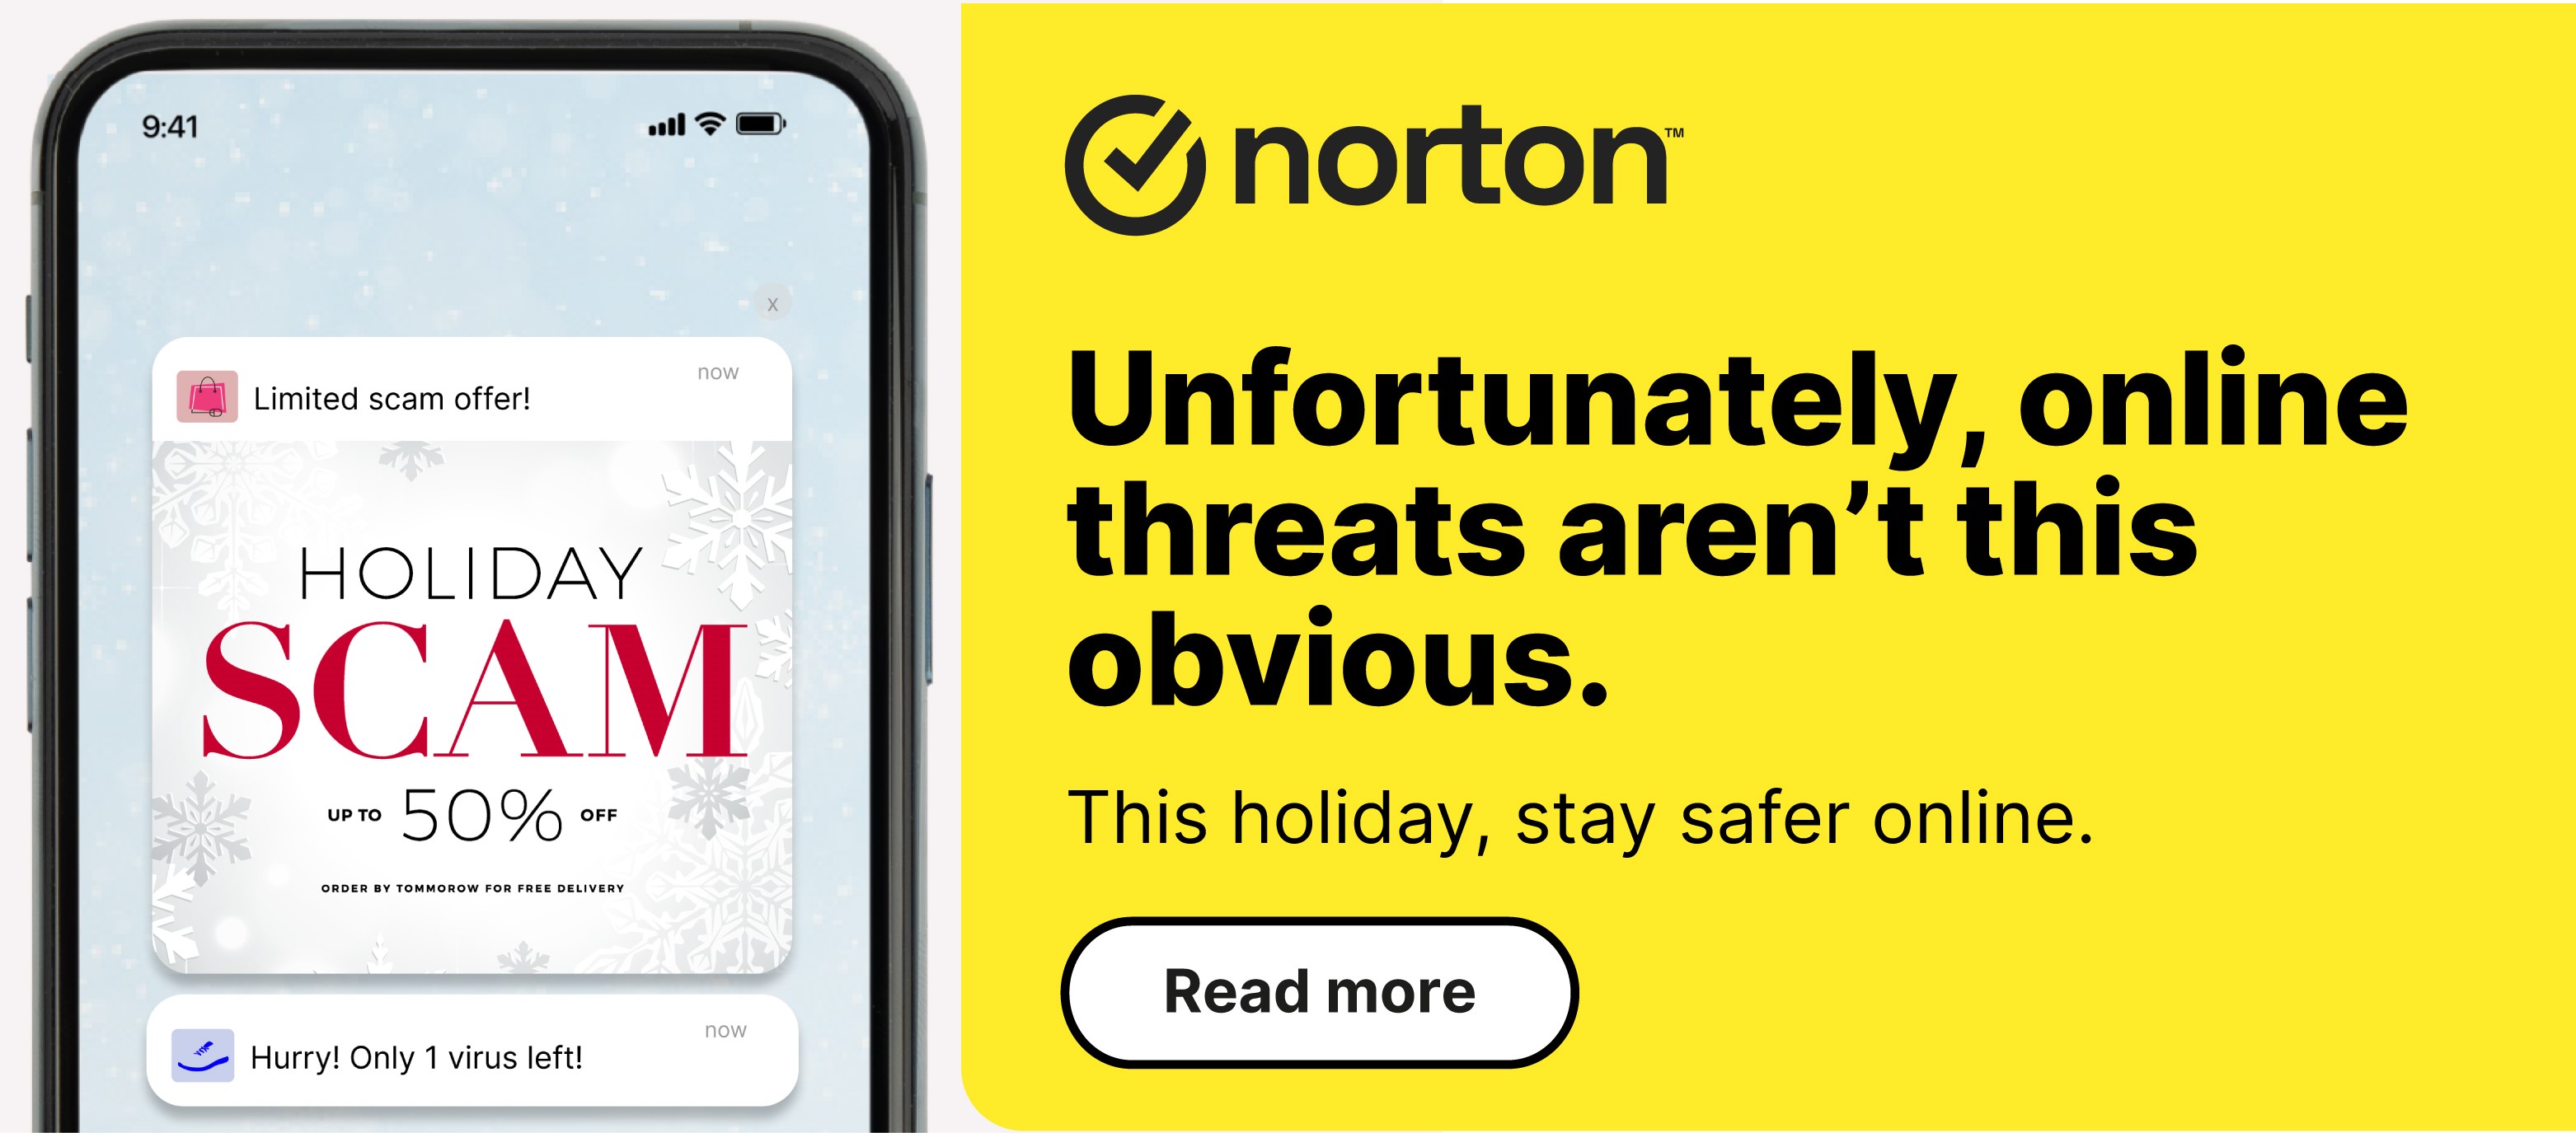 Norton internet security